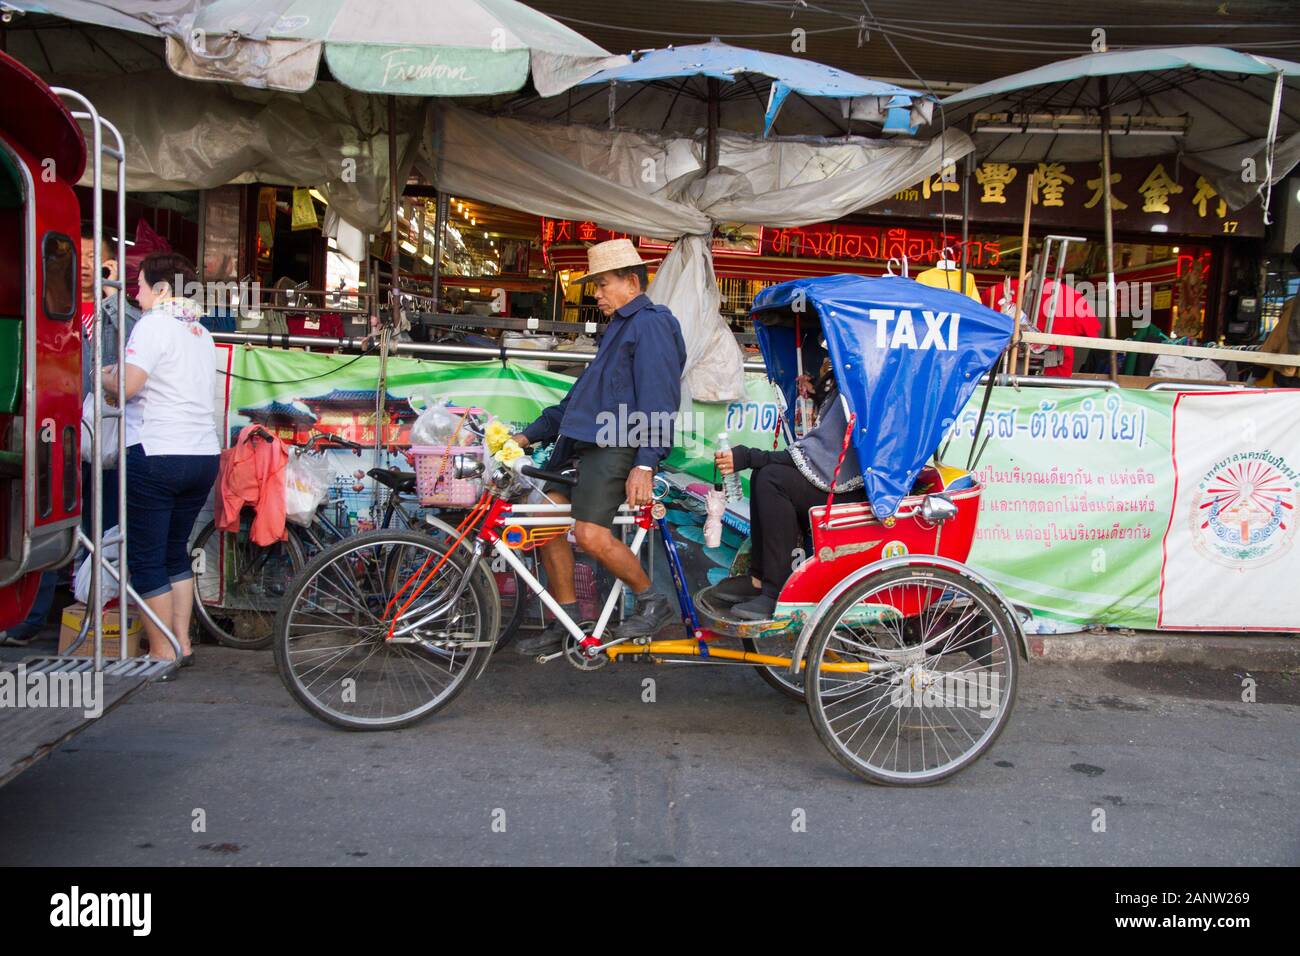 Thailand Chiang Mai Taxi Bike Senior man arbeitet Stockfotografie - Alamy